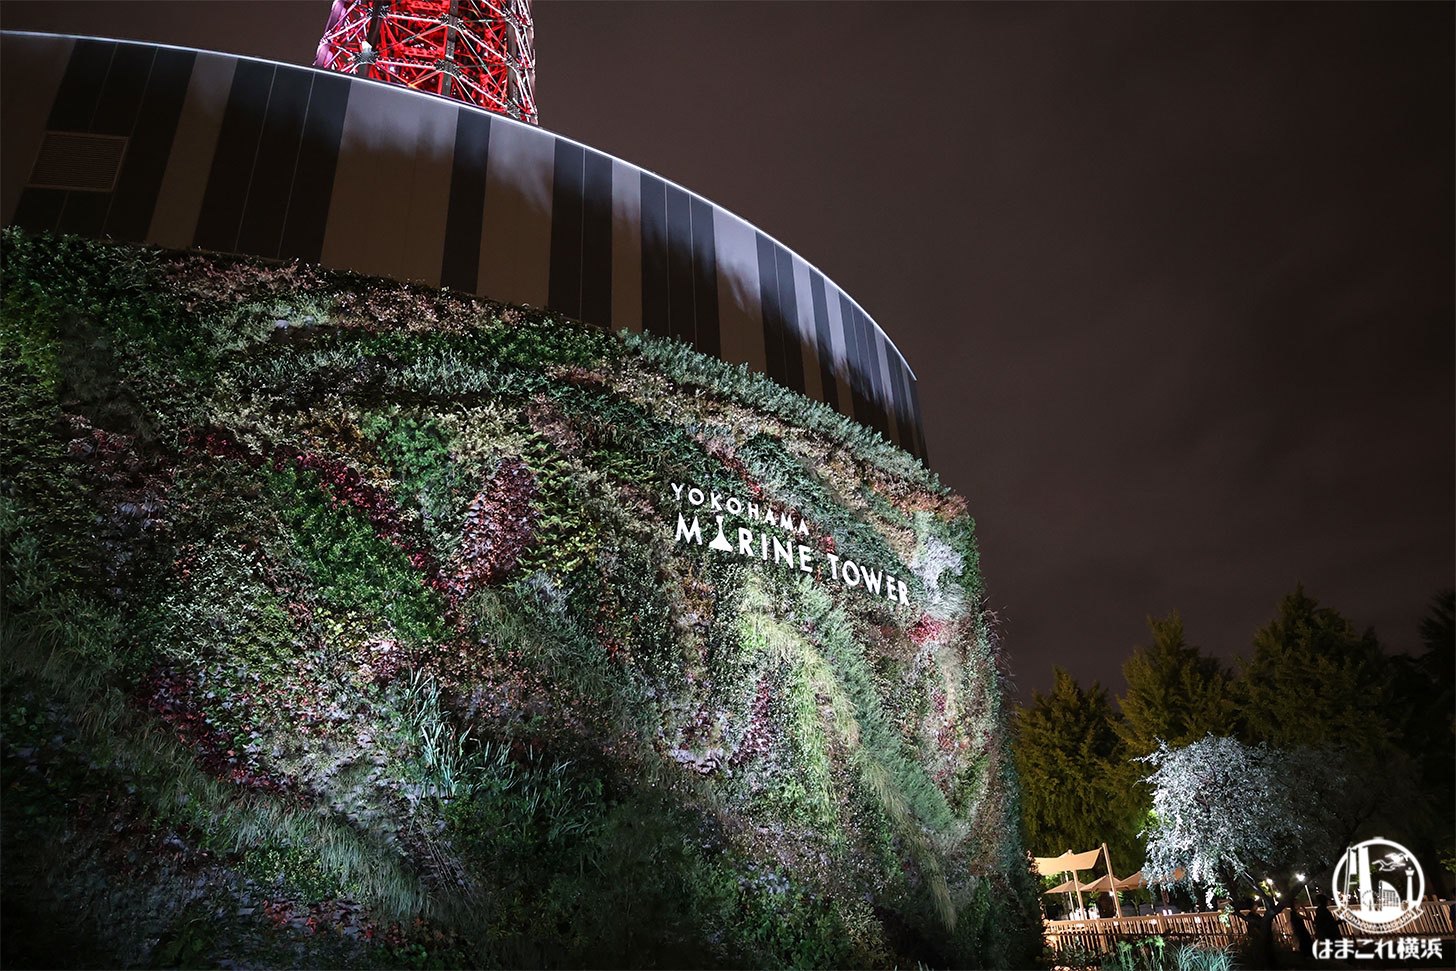 横浜マリンタワー展望フロアで夜景と映像の融合体験！横浜の新たな夜景スポット | はまこれ横浜